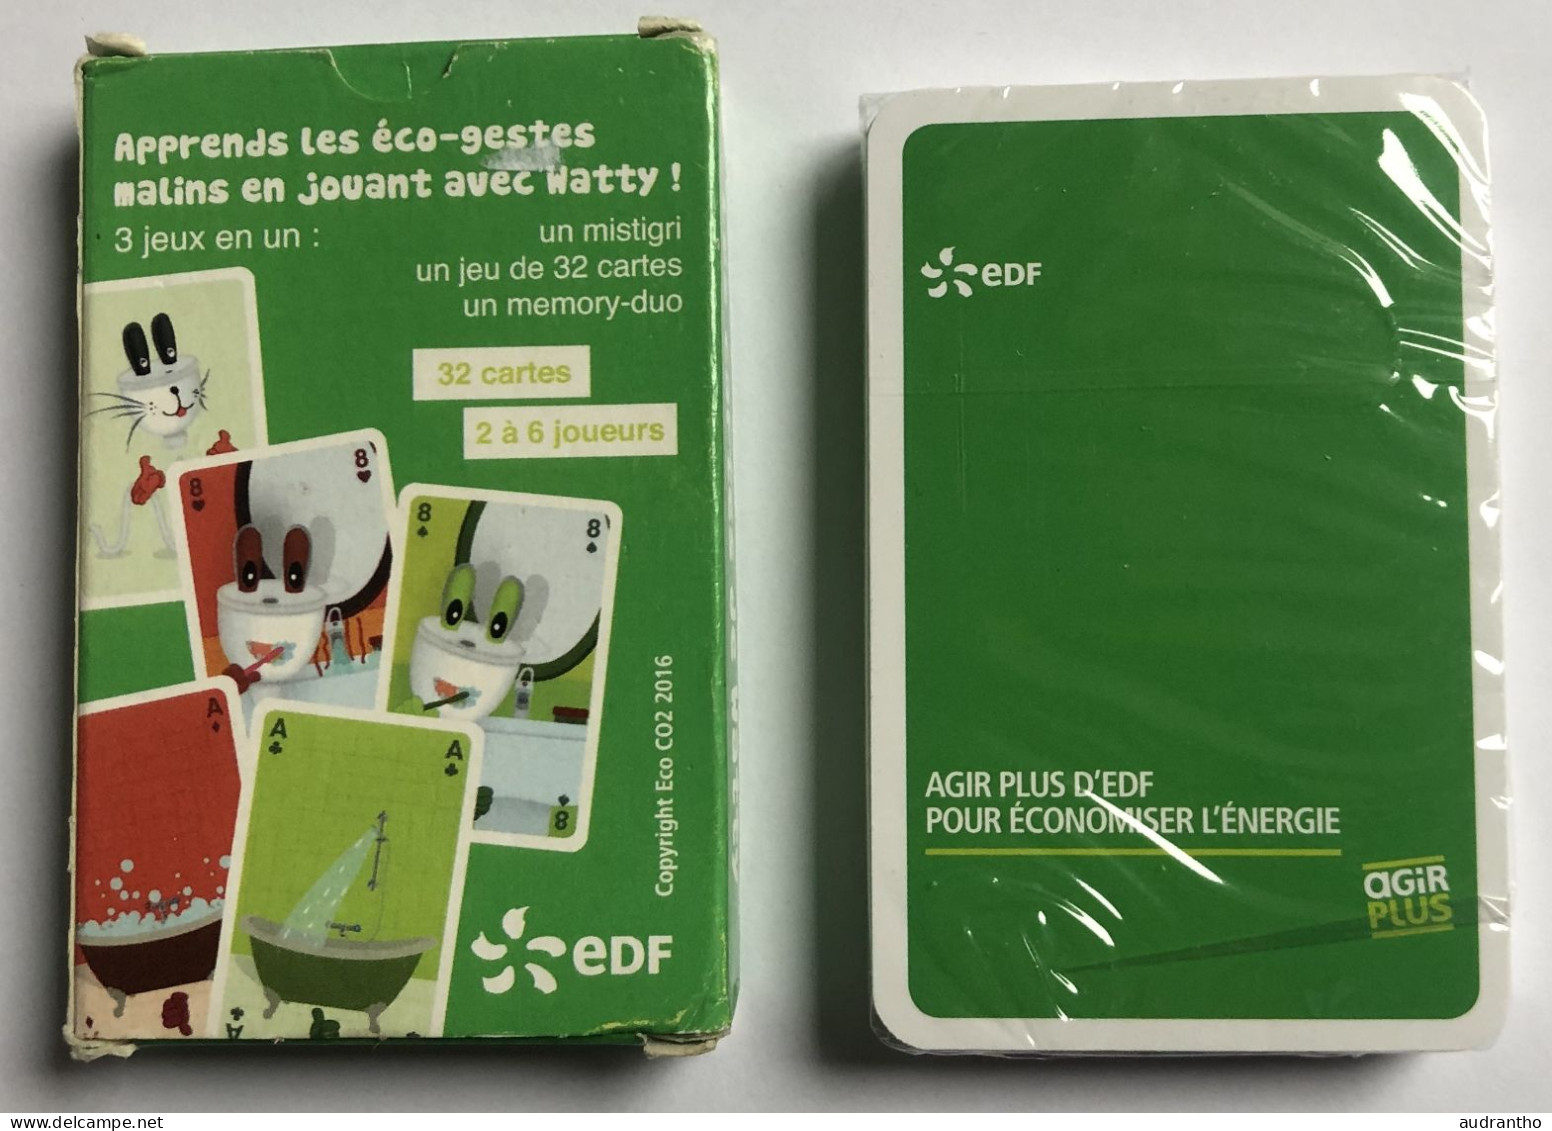 Jeu De 32 Cartes Publicitaire Rare EDF 2016 Les Cartes De Watty - Mistigri Et Memory-duo - Les éco-gestes - 32 Kaarten